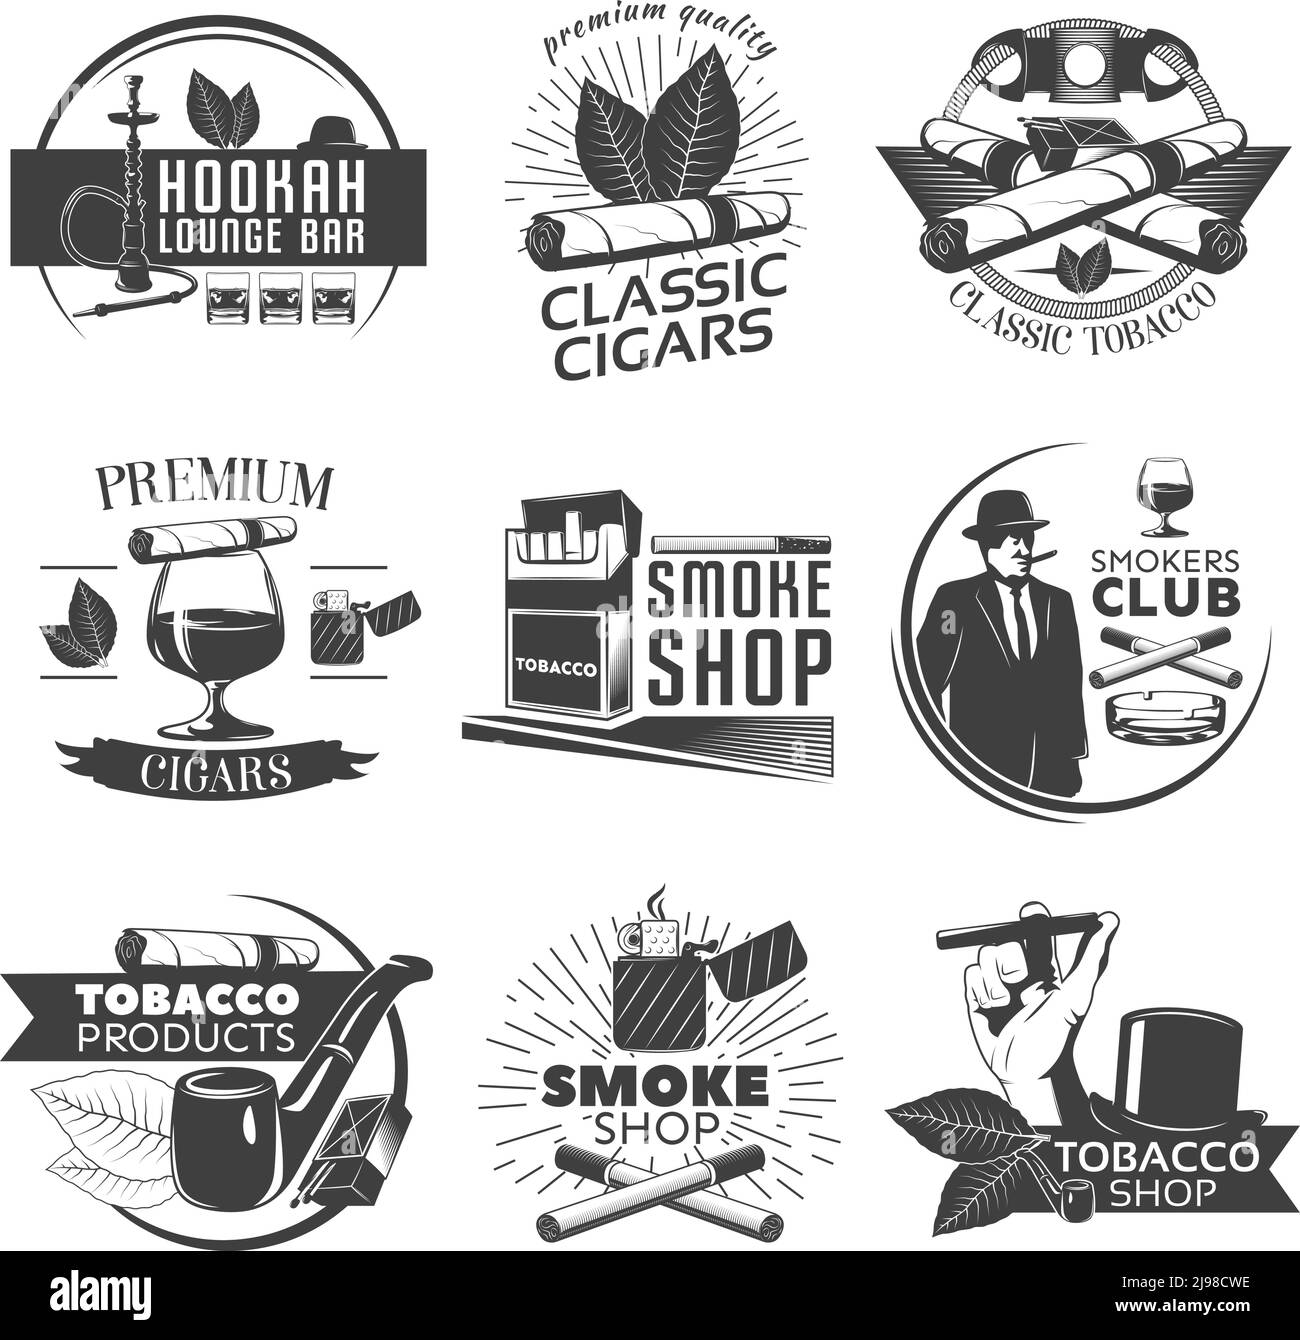 Raucherset mit Tabaketiketten und Beschreibungen der Shisha Lounge Bar Klassische Zigarren klassischen Tabak Rauch Shop Vektor Illustration Stock Vektor